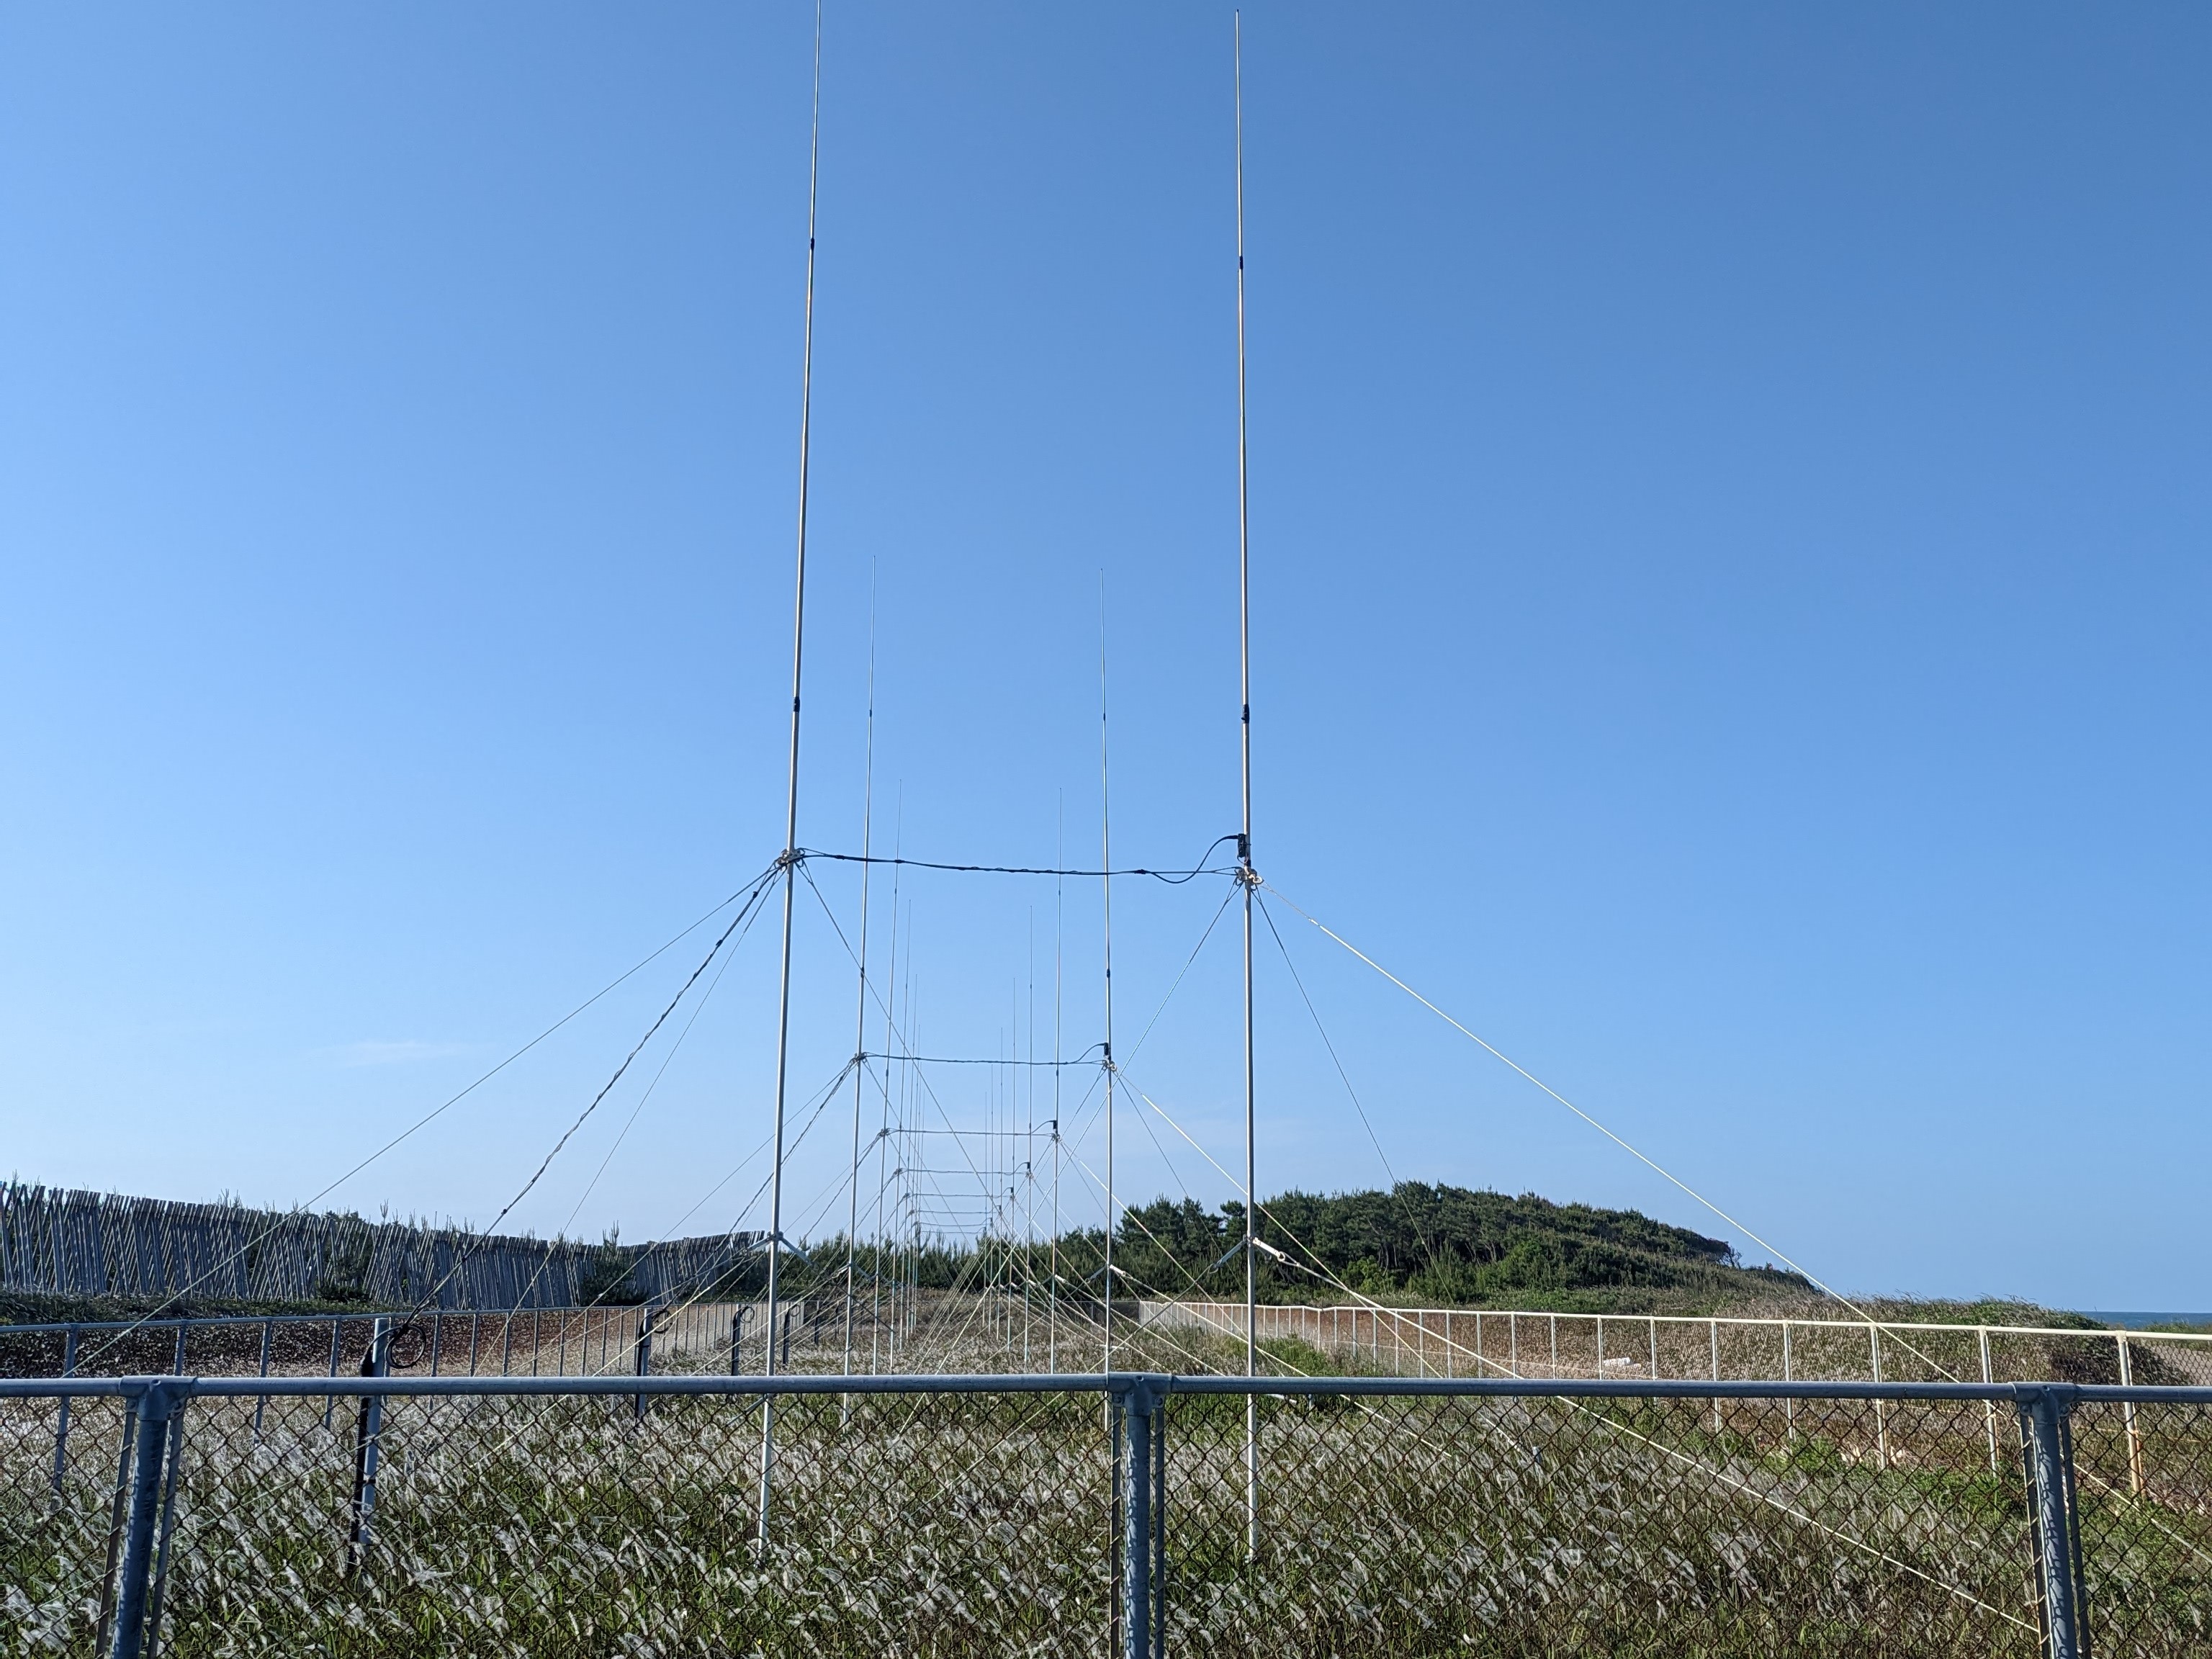 宮崎県の海岸に設置された海洋レーダーの写真です。海洋レーダーは電波を利用して、海の流れと波高を測定する装置です。